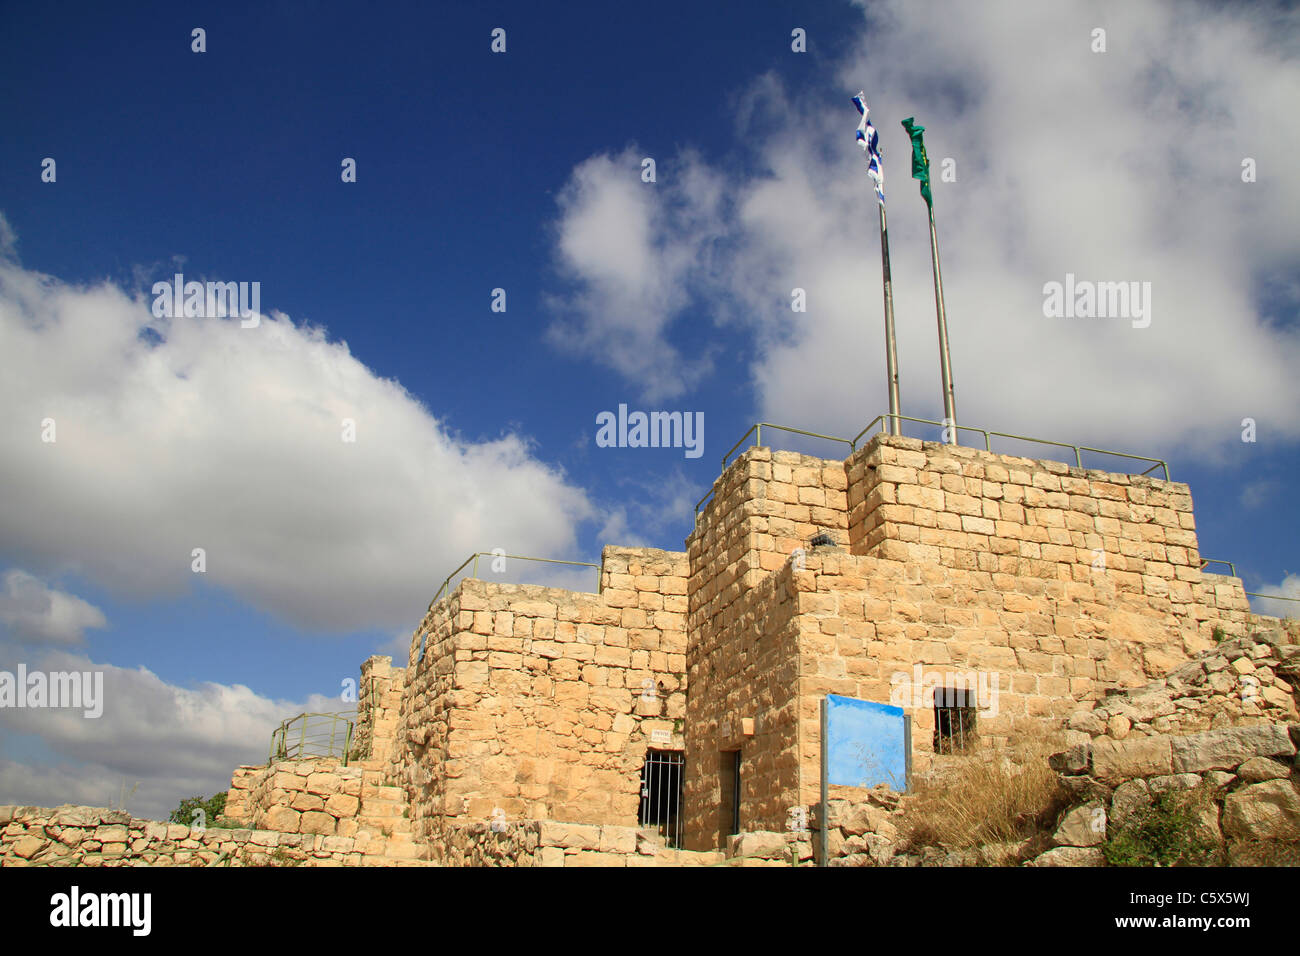 Israël, Jérusalem montagnes, Castel Parc National, ruines de la forteresse des Croisés Castellum Belveern Banque D'Images